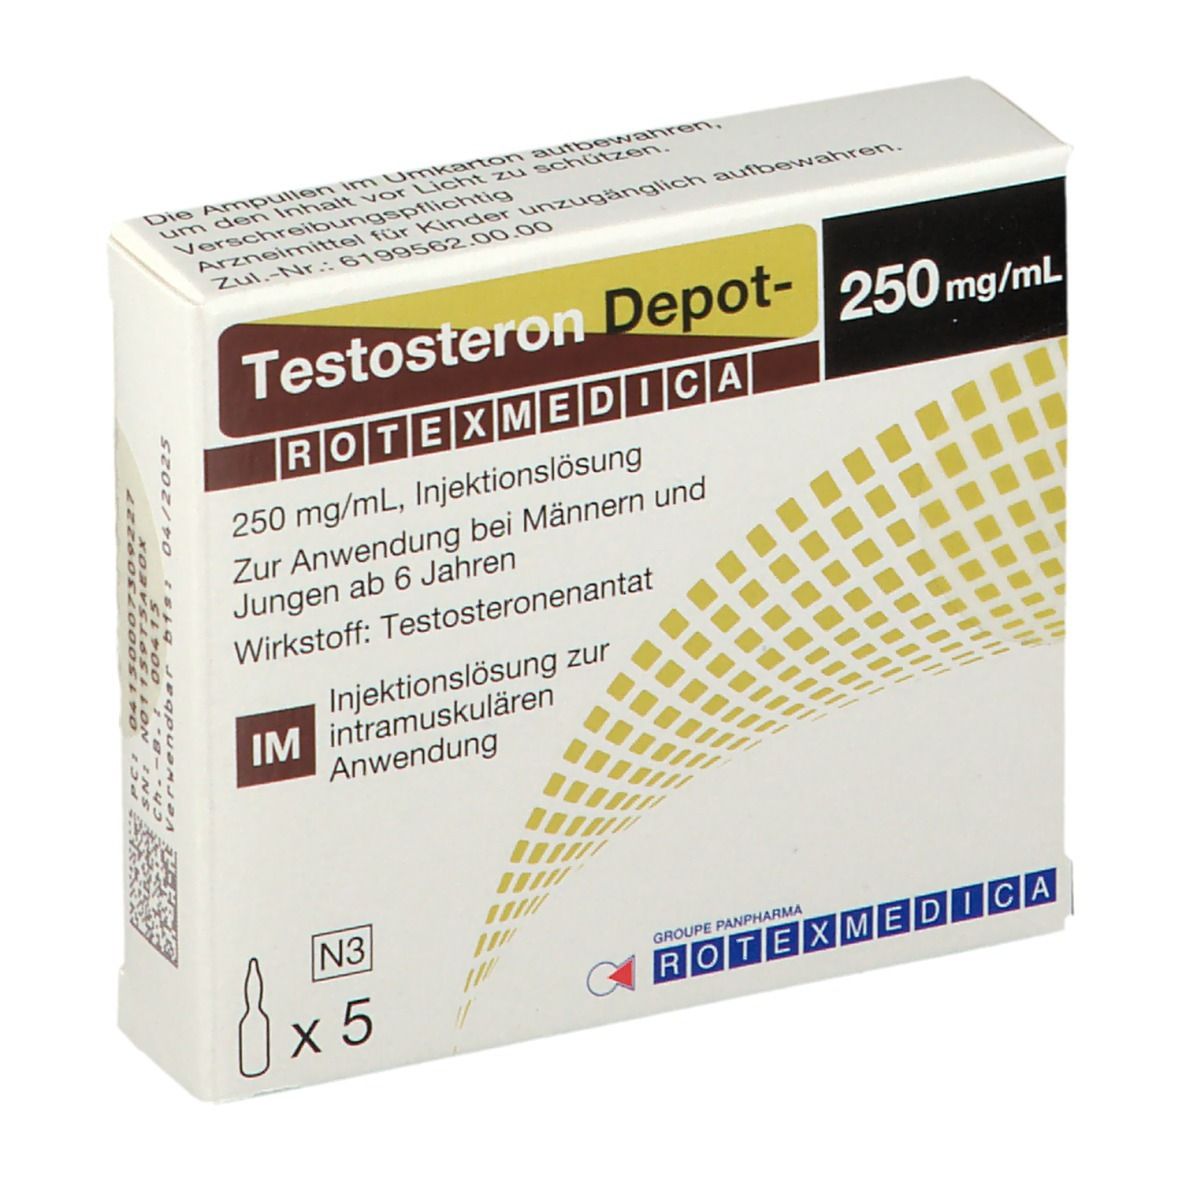 10 Gründe, warum ein ausgezeichnetes Methanobolic 10 mg Asia Pharma | FAC-0323 nicht ausreicht